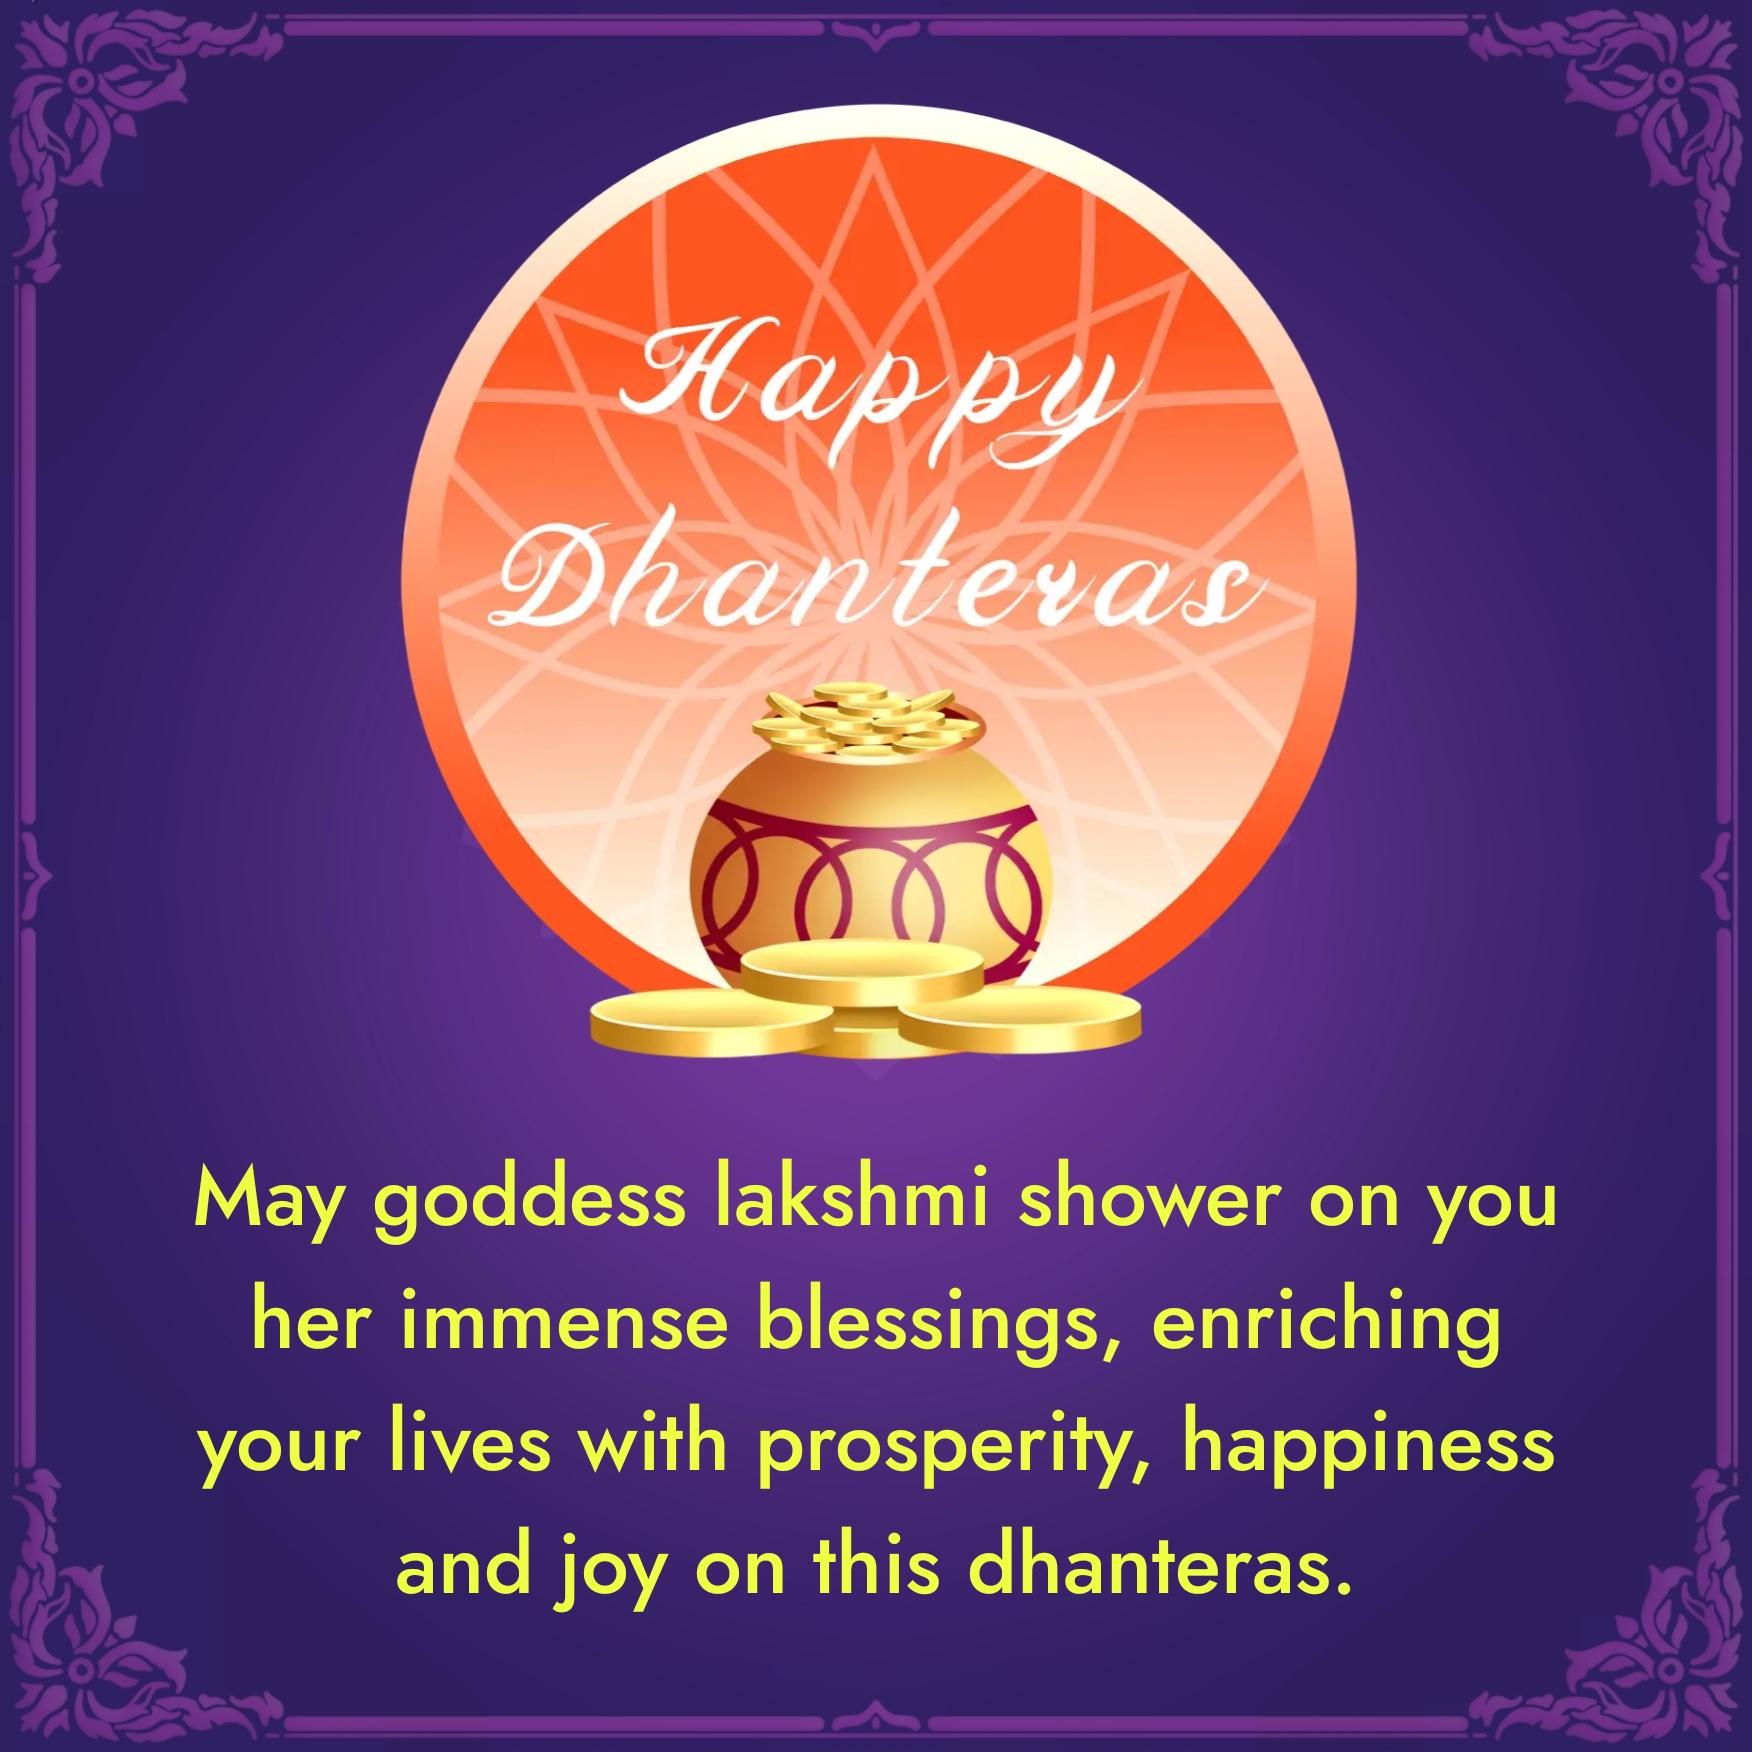 May goddess lakshmi shower on you her immense blessings